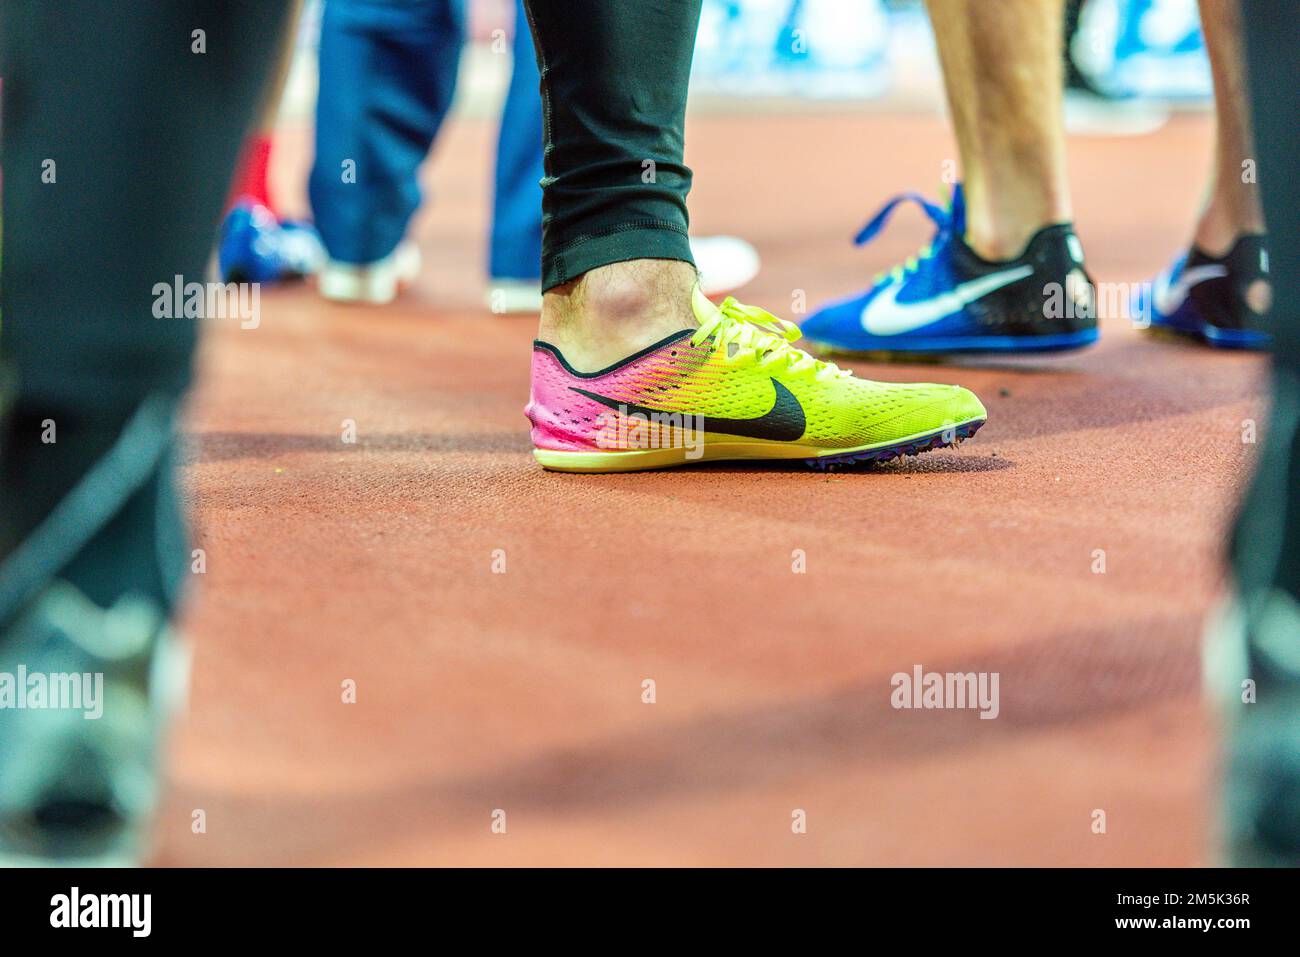 La chaussure de course Nike parmi les coureurs qui se rassemblent pour courir sur la piste du stade olympique. Chaussures d'entraînement Banque D'Images